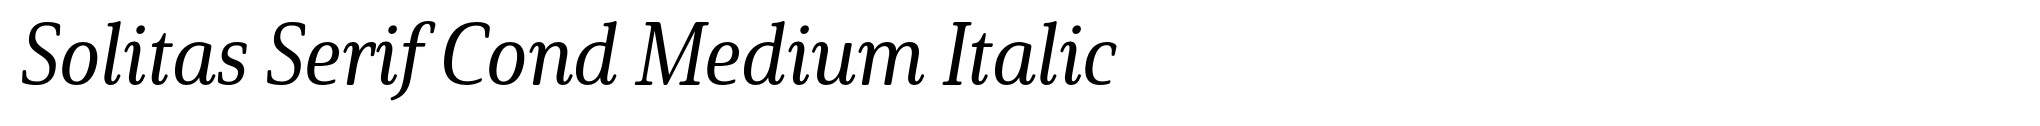 Solitas Serif Cond Medium Italic image